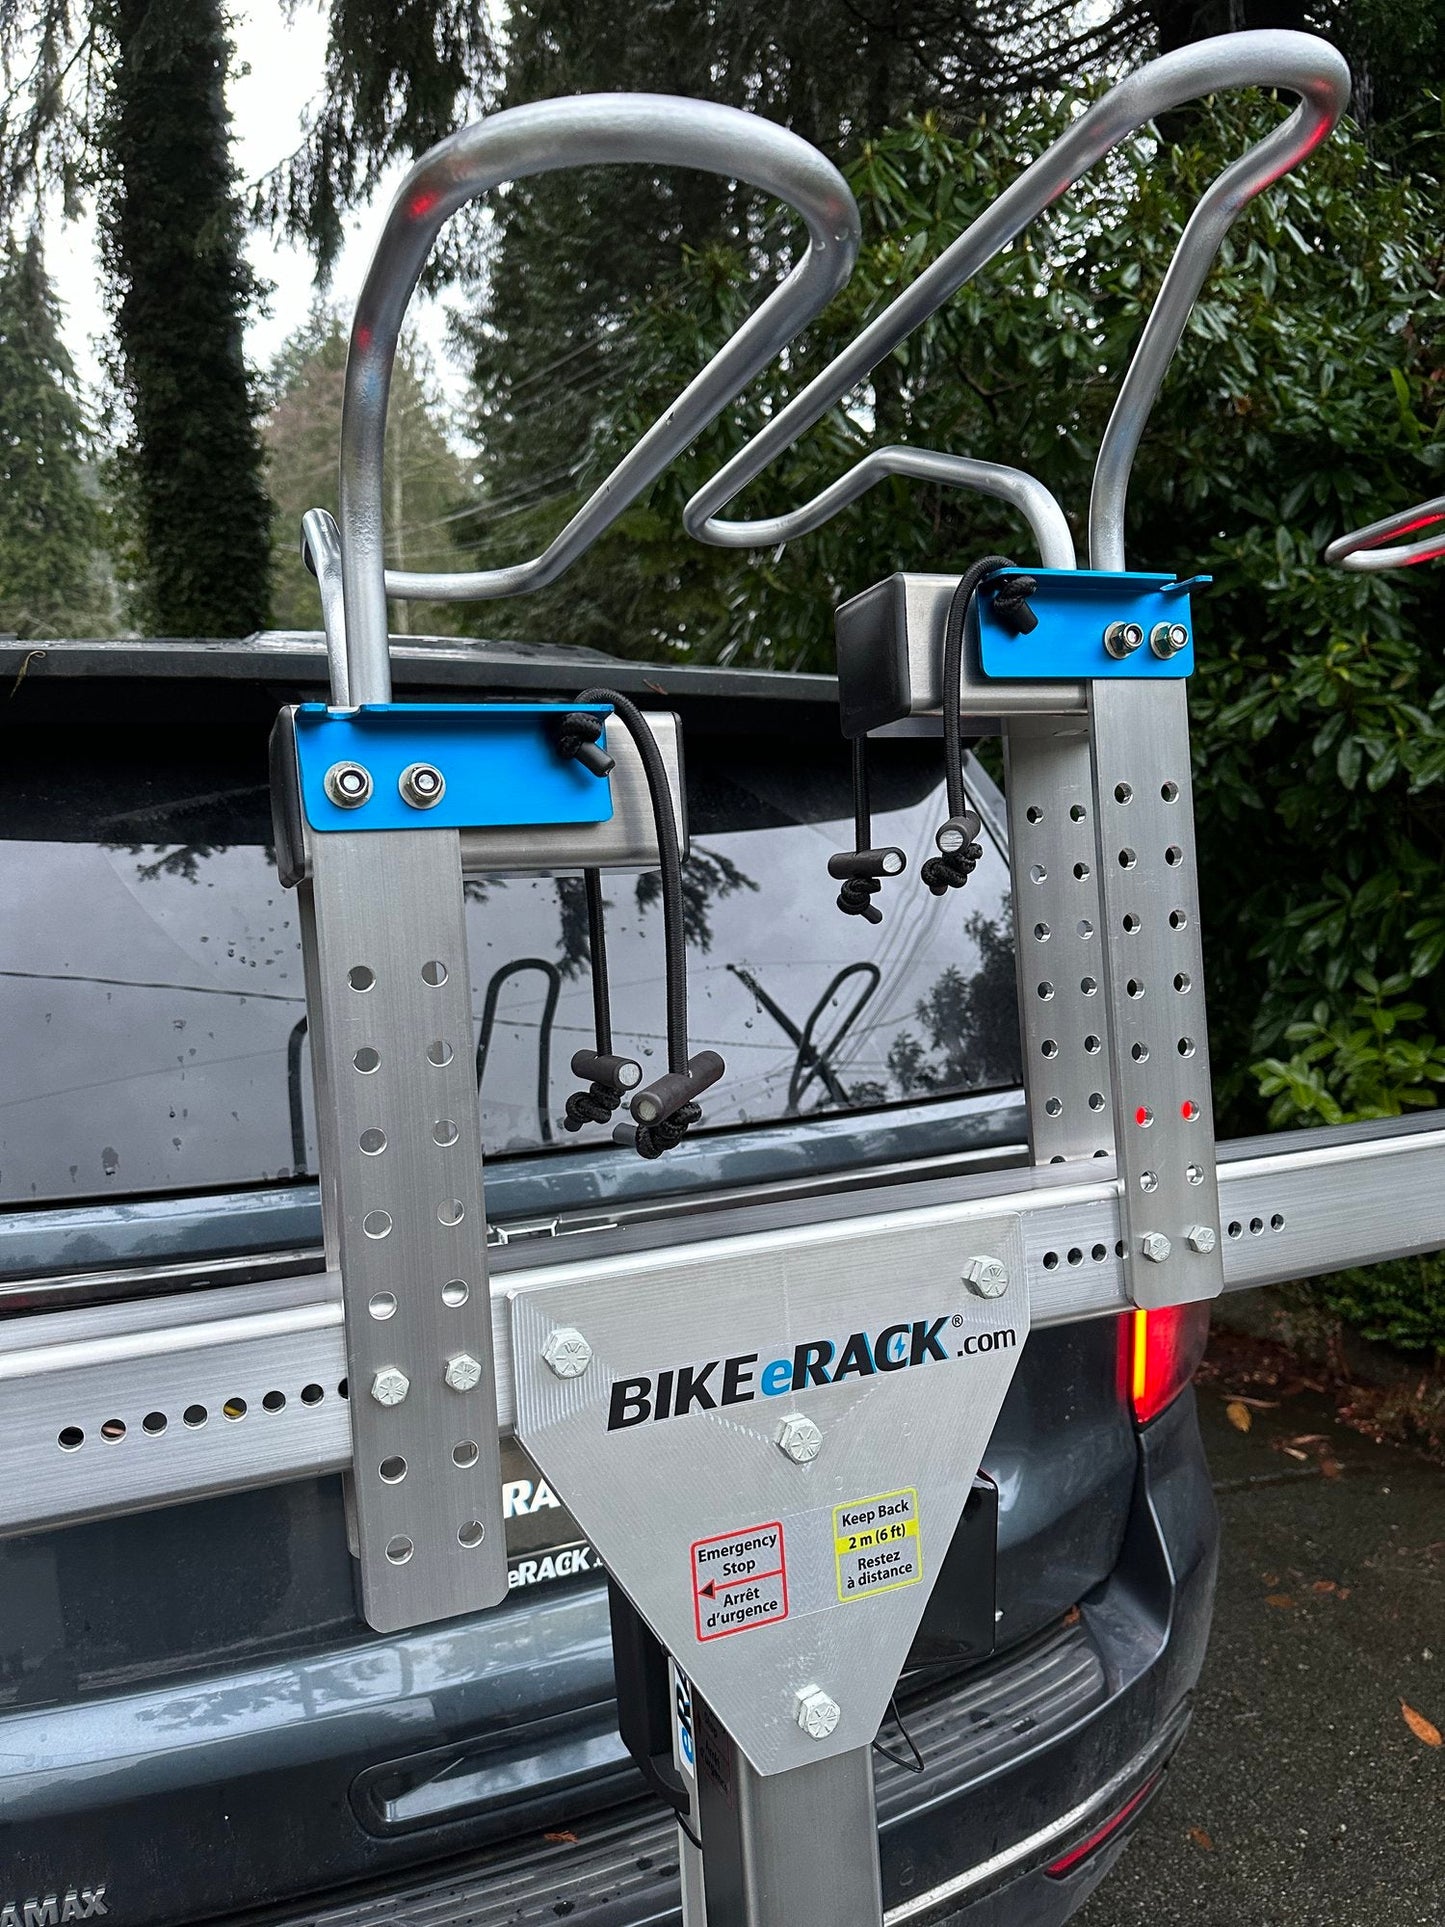 BIKE eRACK - 1 Adaptive Mountain Bike +1 extra eBike, Handcycle Rack for your Car! Electric, Self-Loading! eRACK